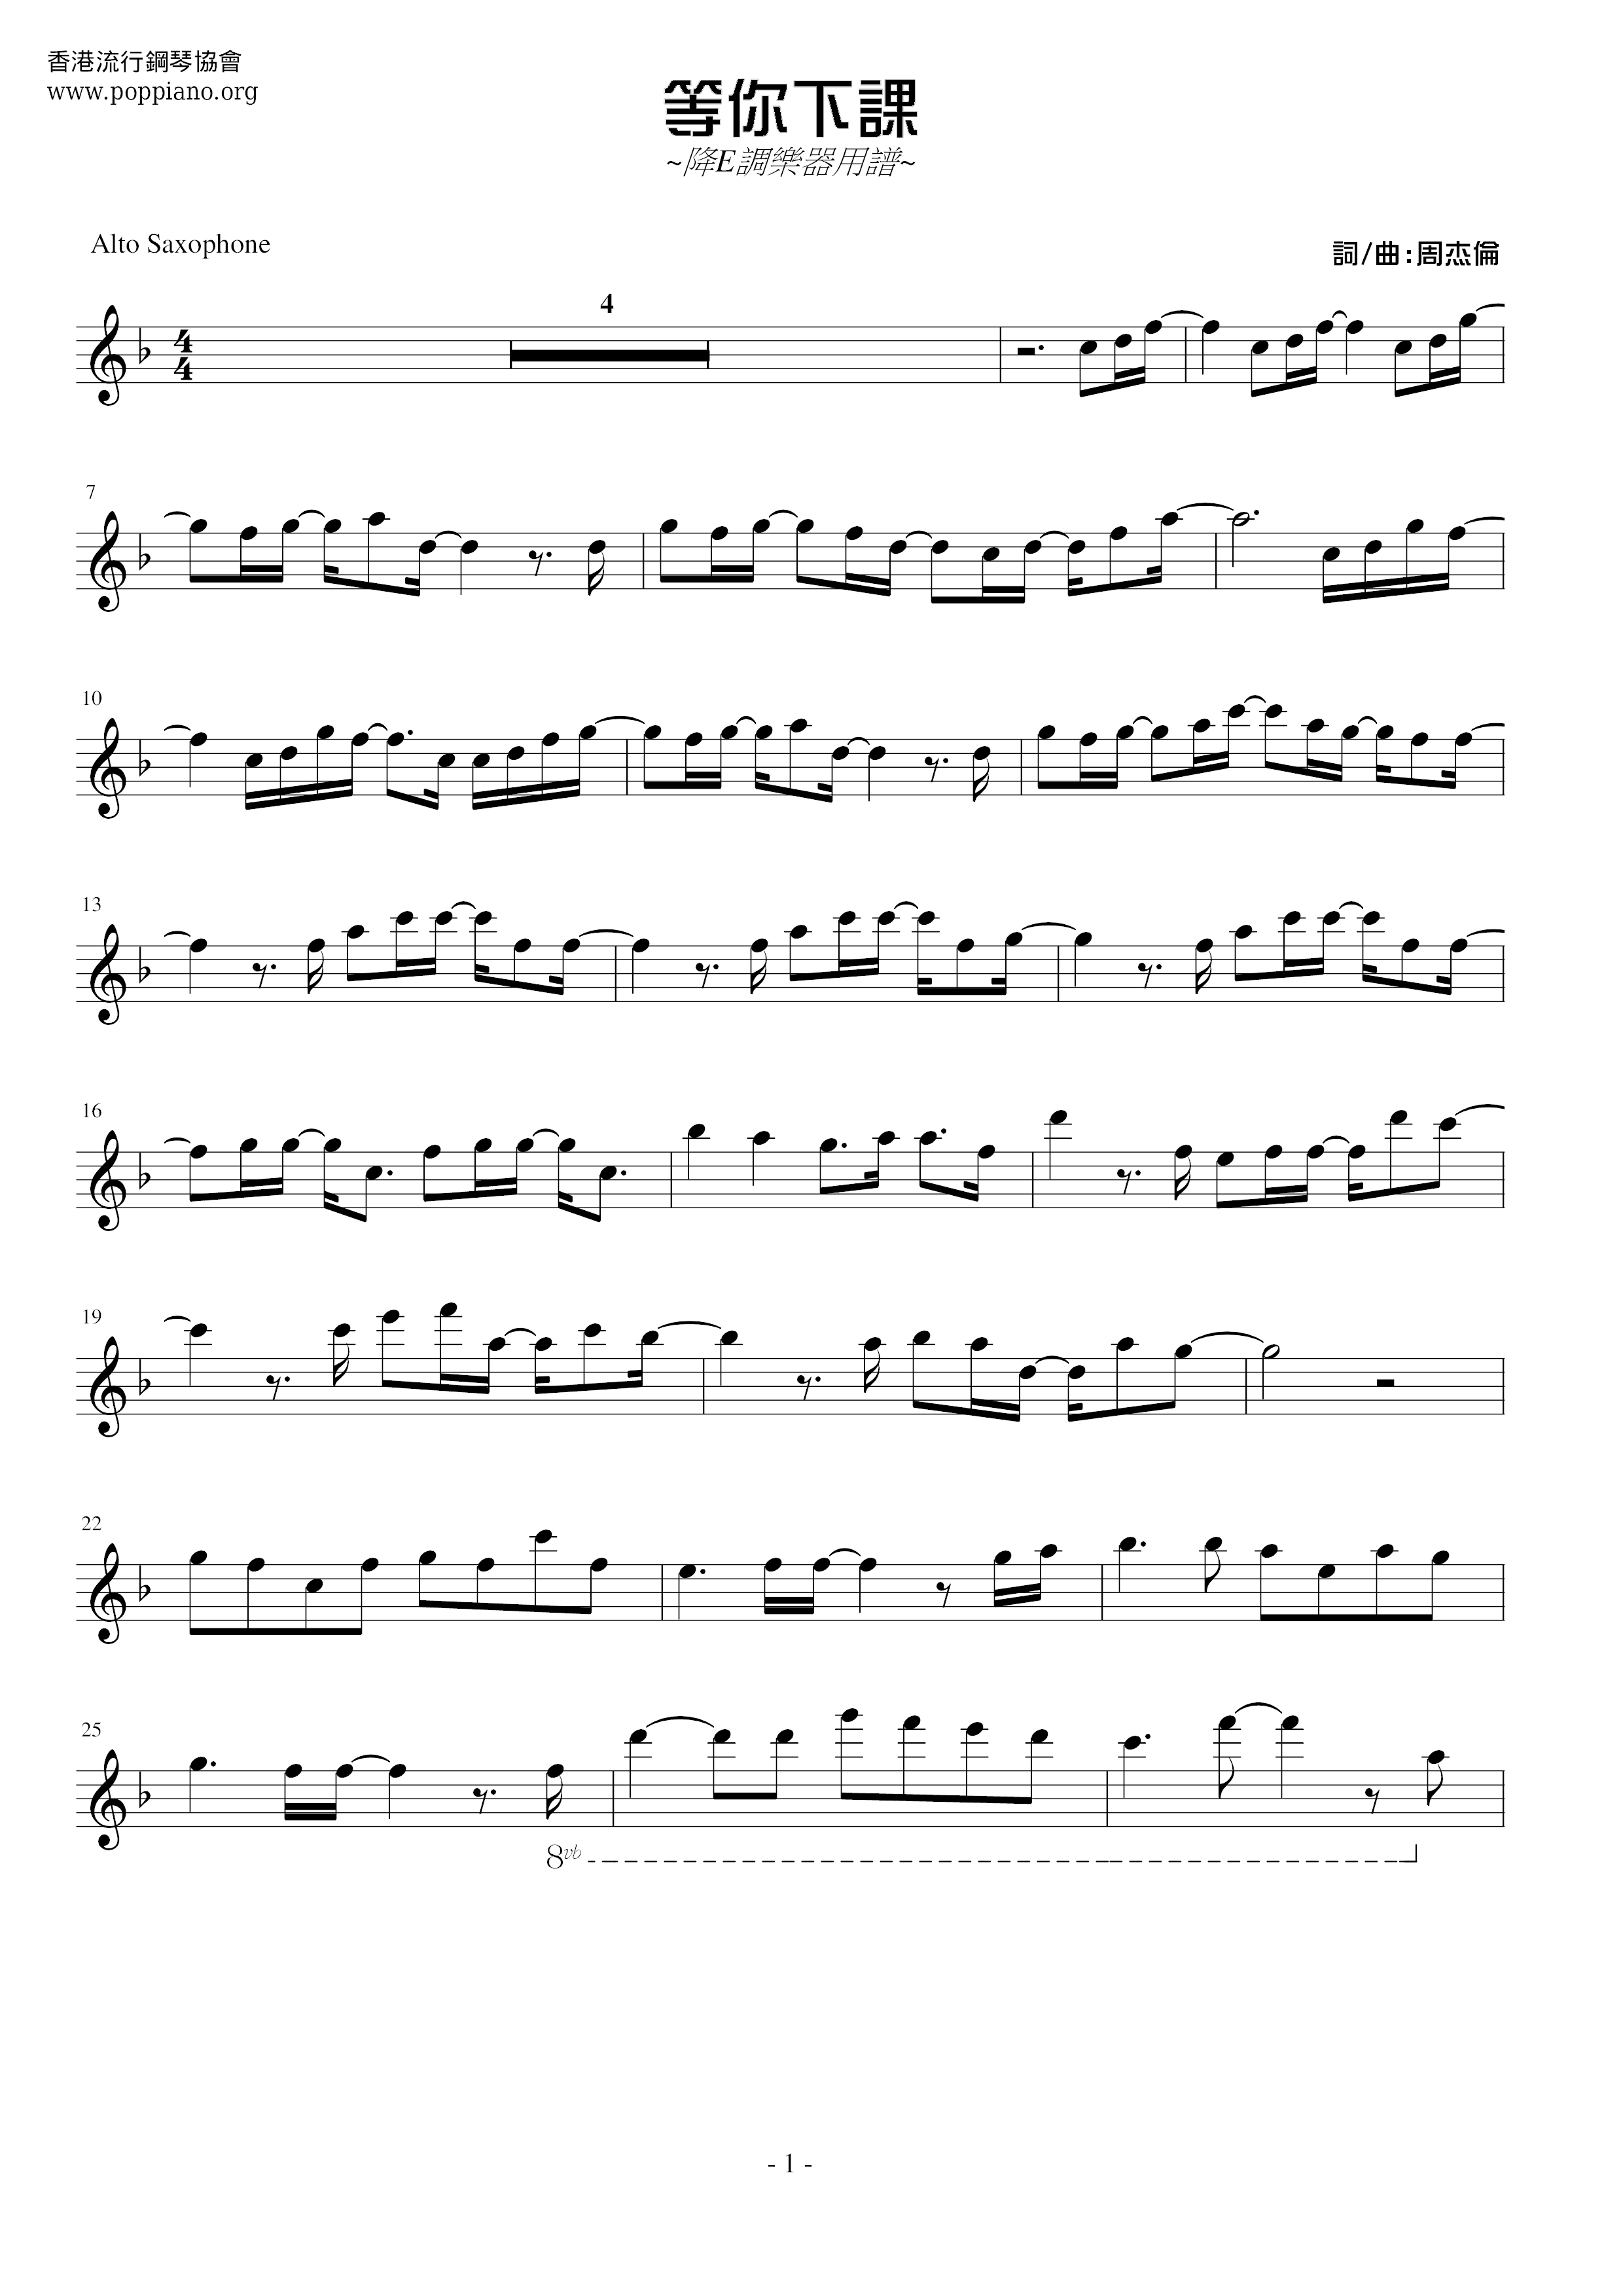 周杰伦-等你下课 小提琴谱pdf-香港流行钢琴协会琴谱下载